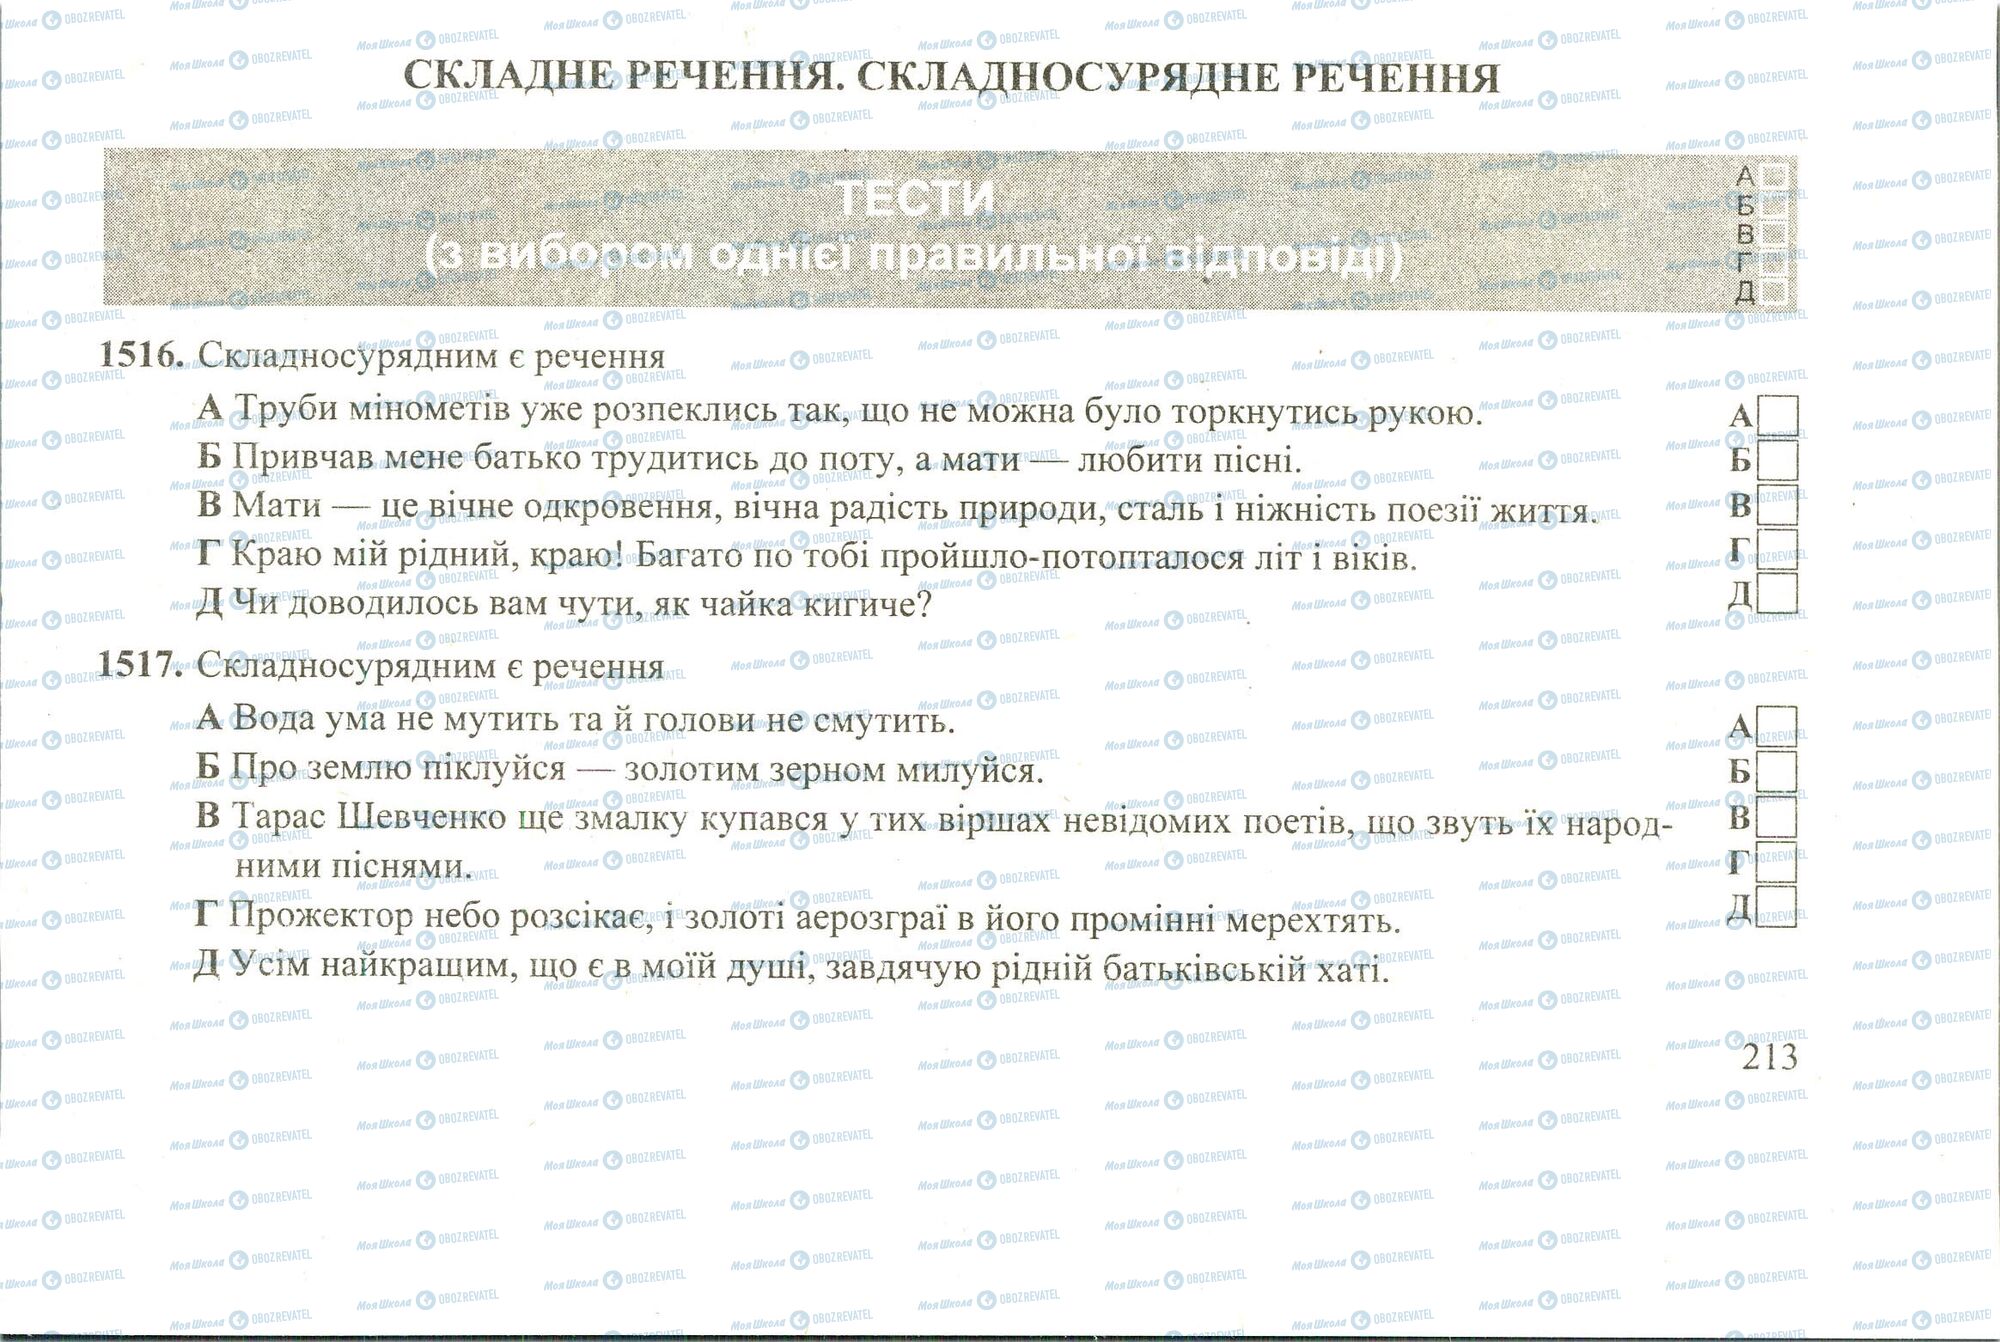 ЗНО Укр мова 11 класс страница 1516-1517